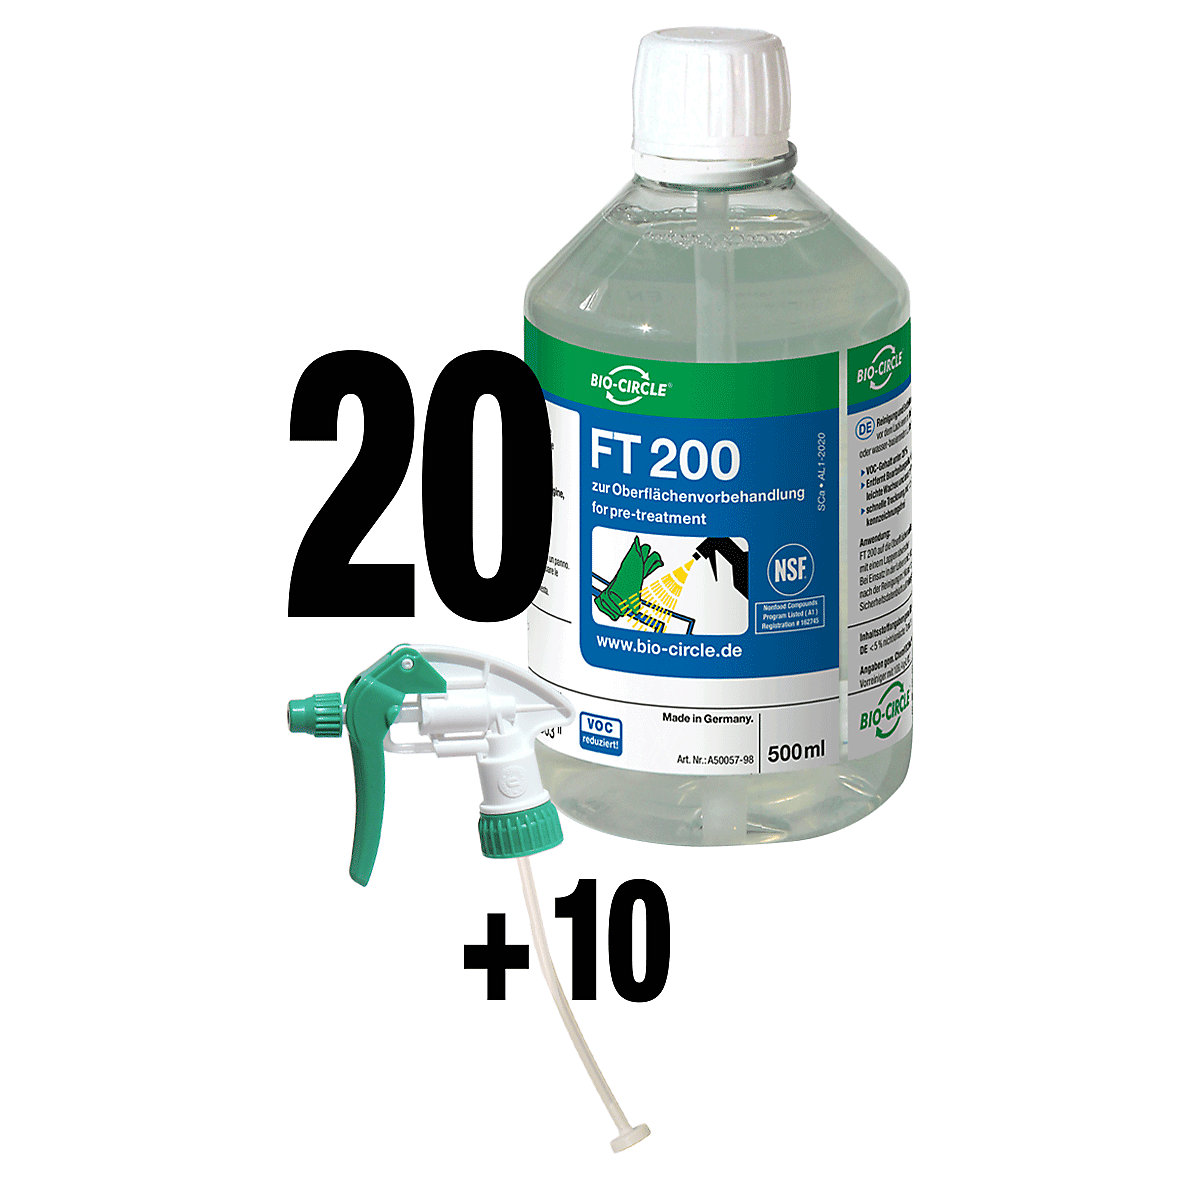 Sredstvo za čišćenje FT 200 – Bio-Circle